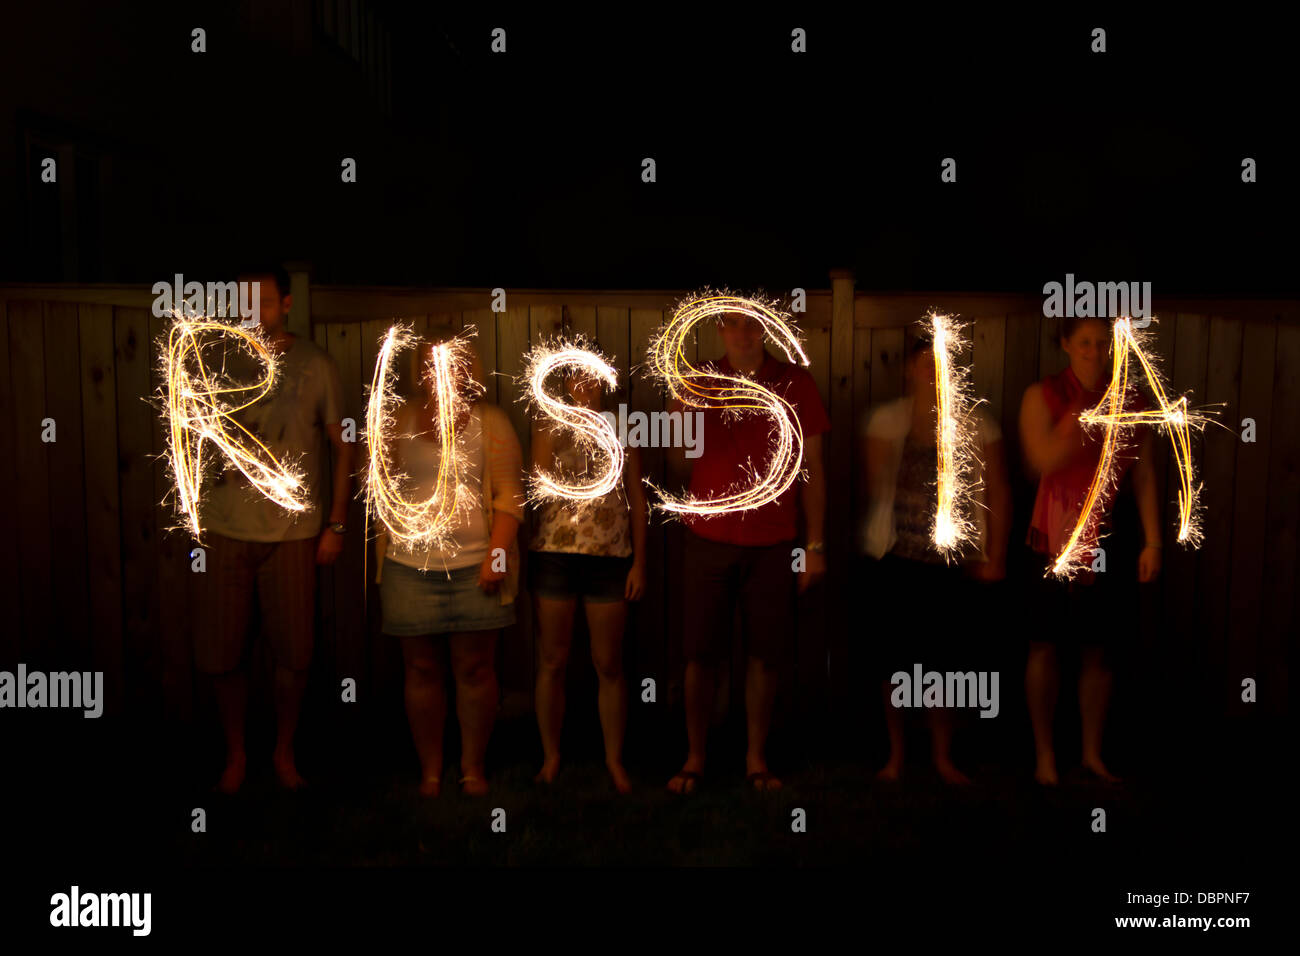 La Russie n'en cierges time lapse photography Banque D'Images